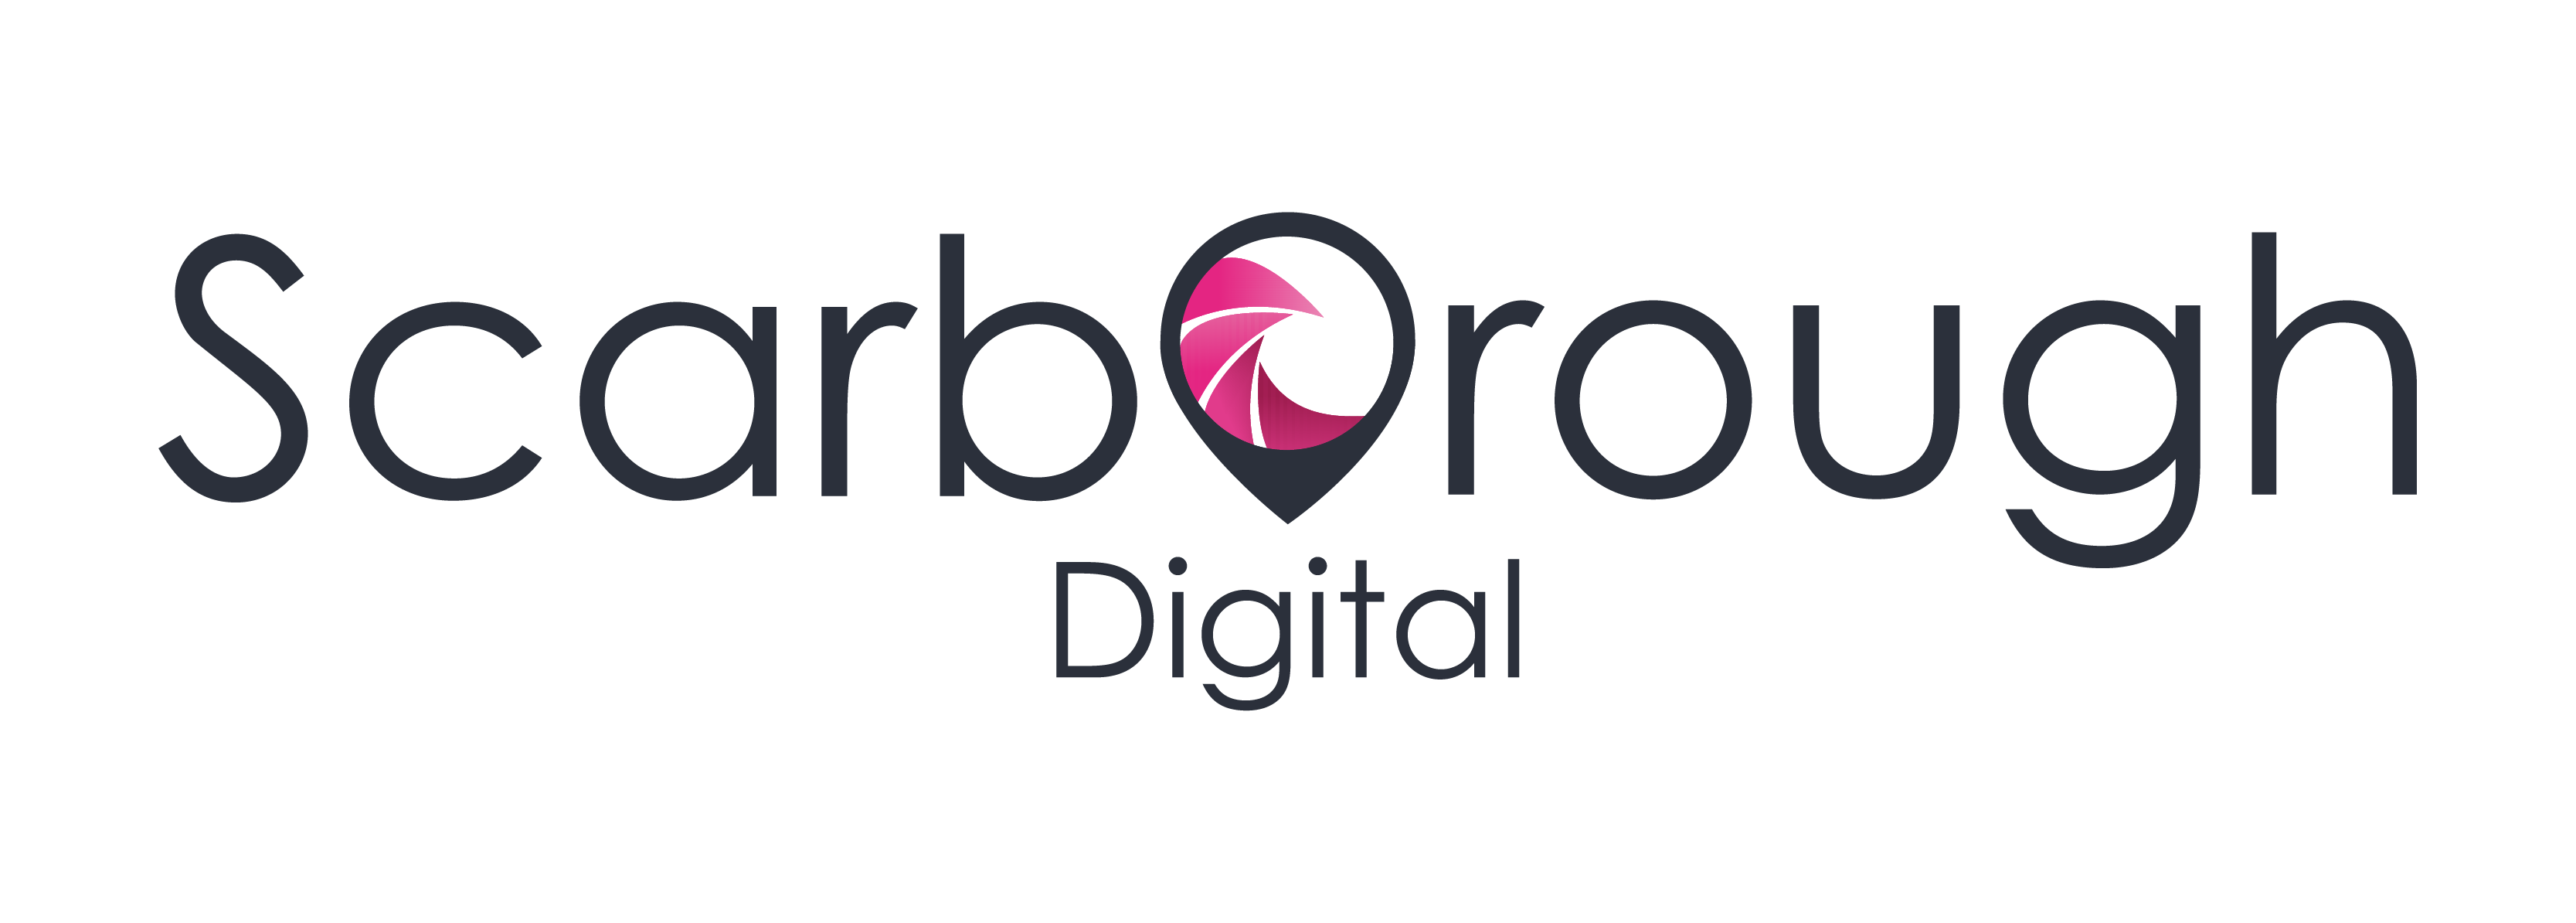 Scarborough Digital